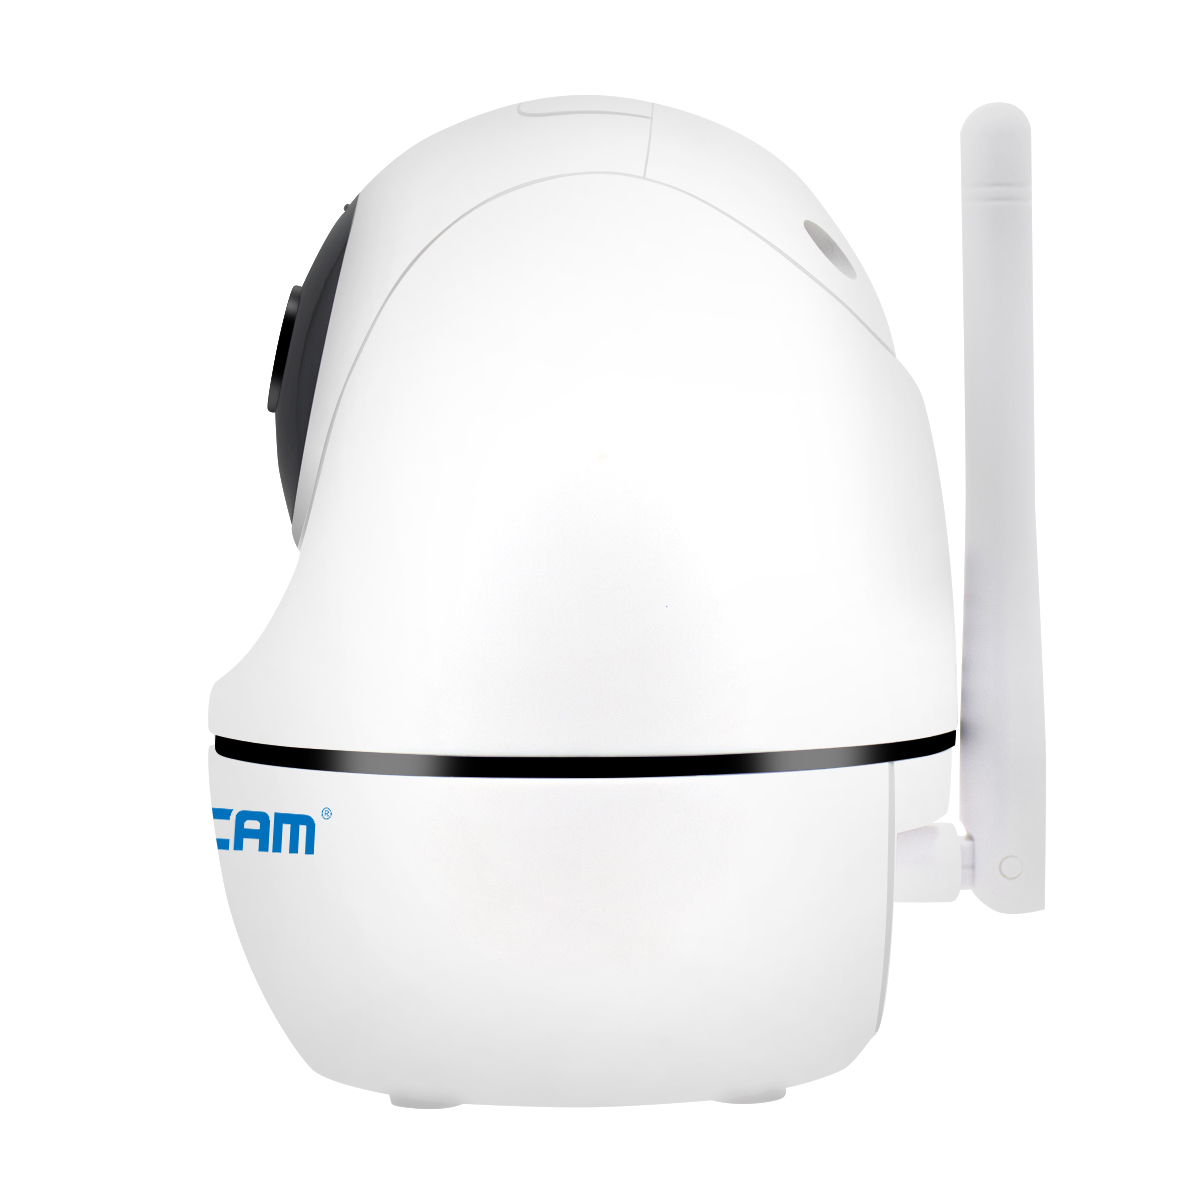 ESCAM PVR008 H.265 Telecamera IP PTZ Pan/Tilt con monitoraggio automatico per visione notturna wireless 2MP HD 1080P 3